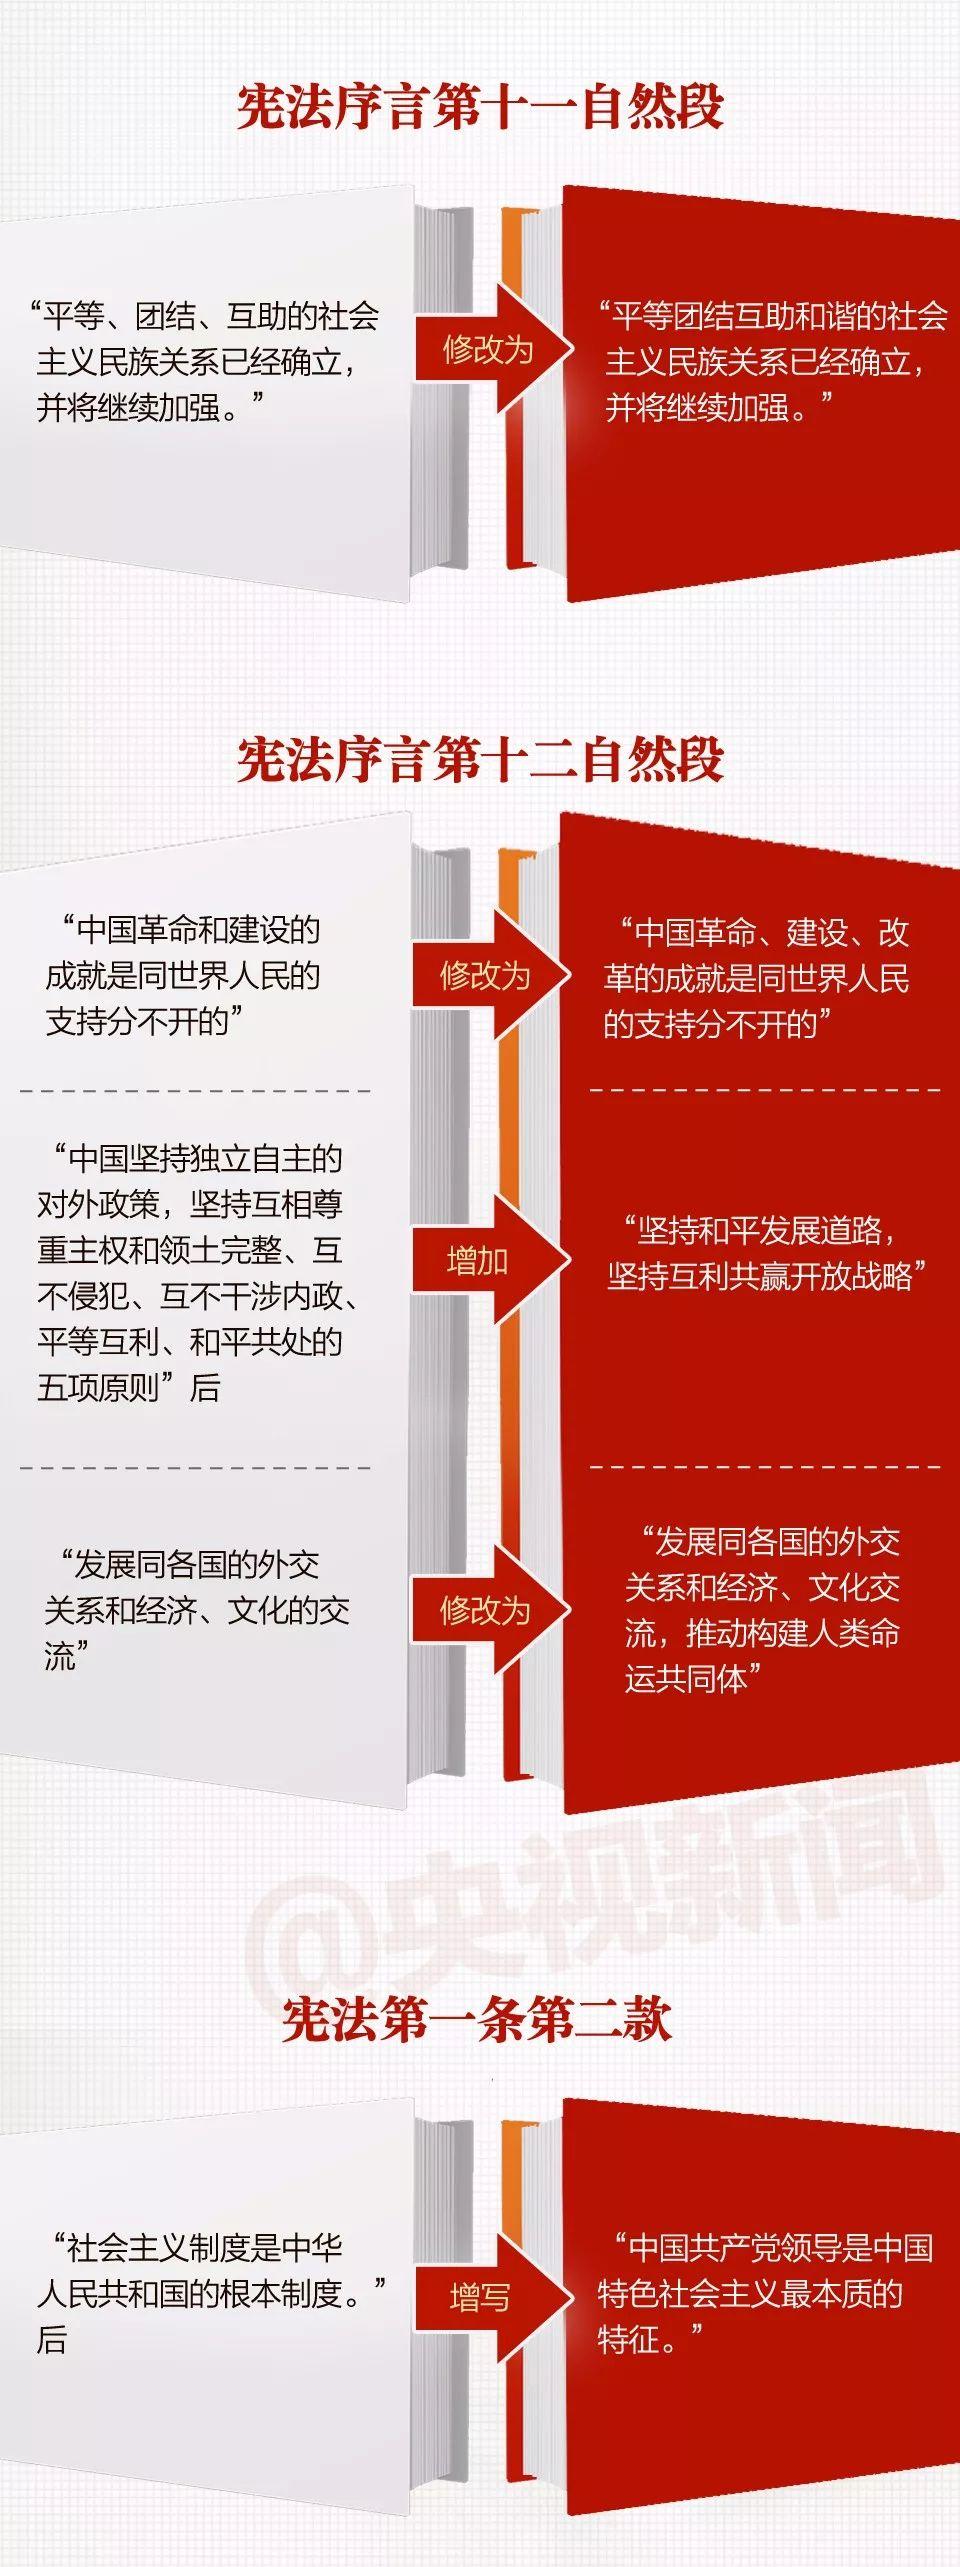 一张图，带你看懂《中华人民共和国宪法修正案》